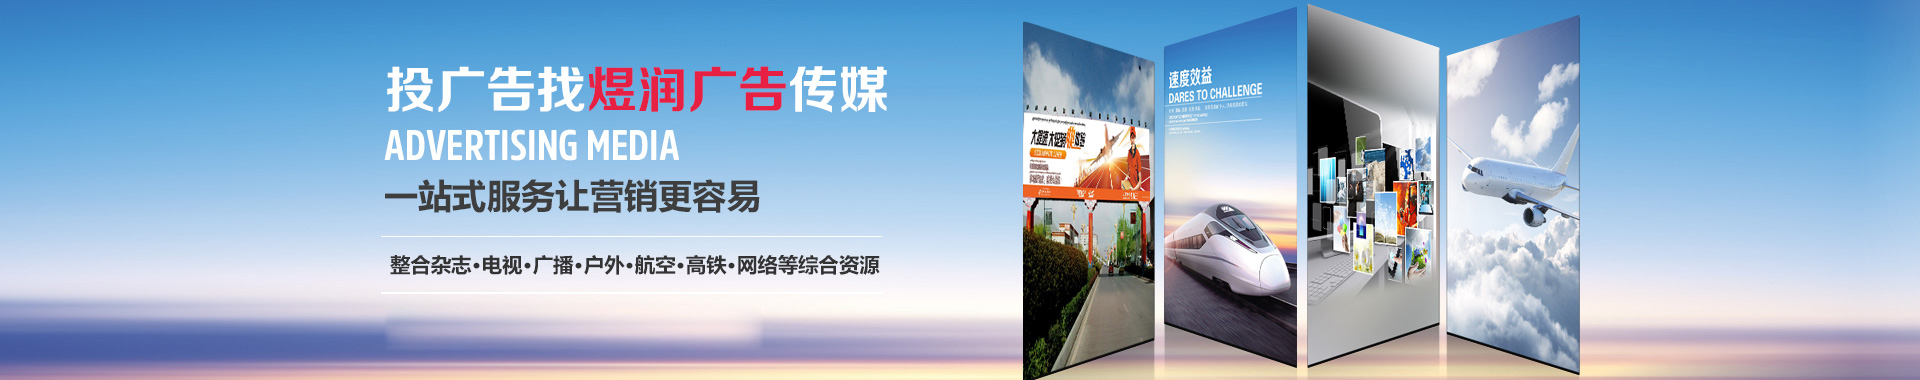 上海交通广播105.7广告|2019较新广告价格|广告电话